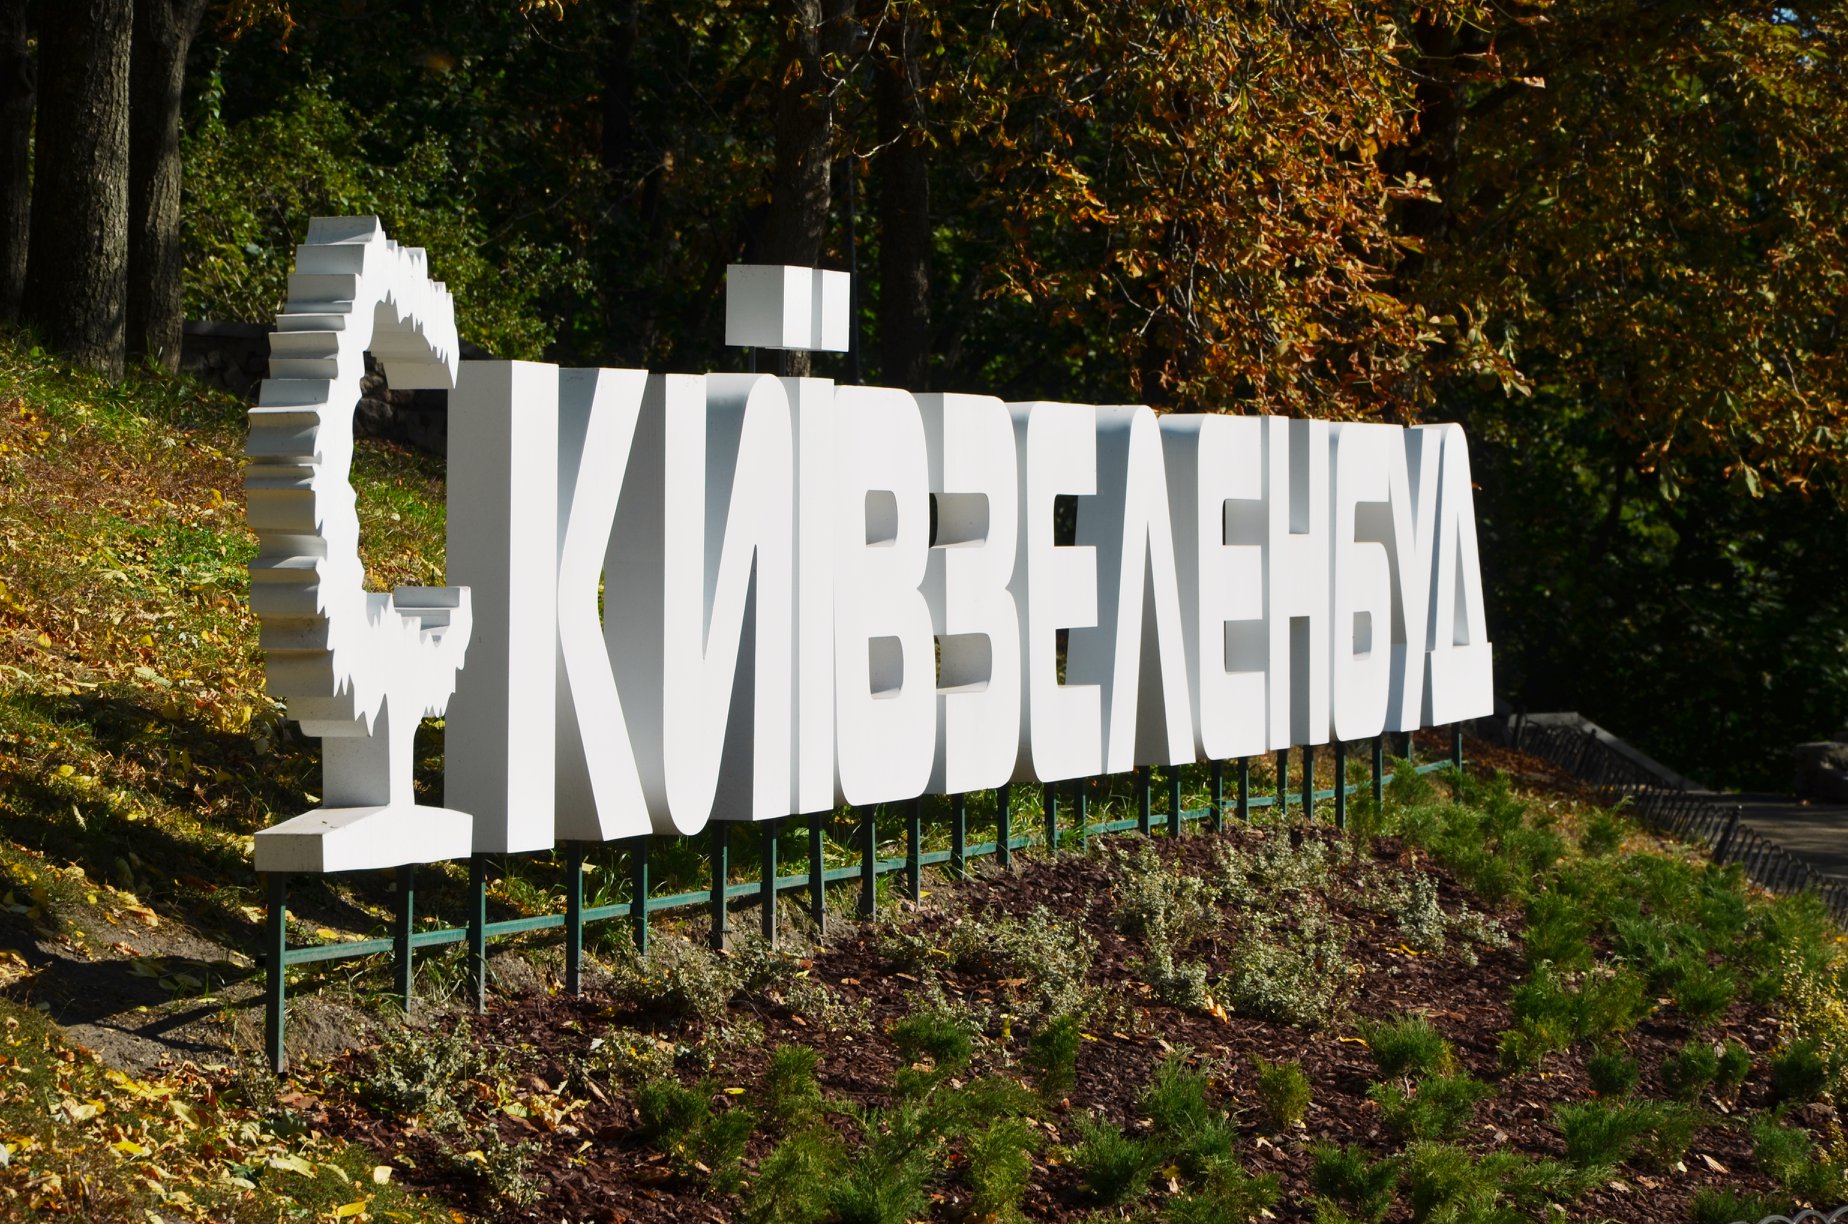 “Киевзеленстрой” планирует закончить 2019 год с мизерной прибылью